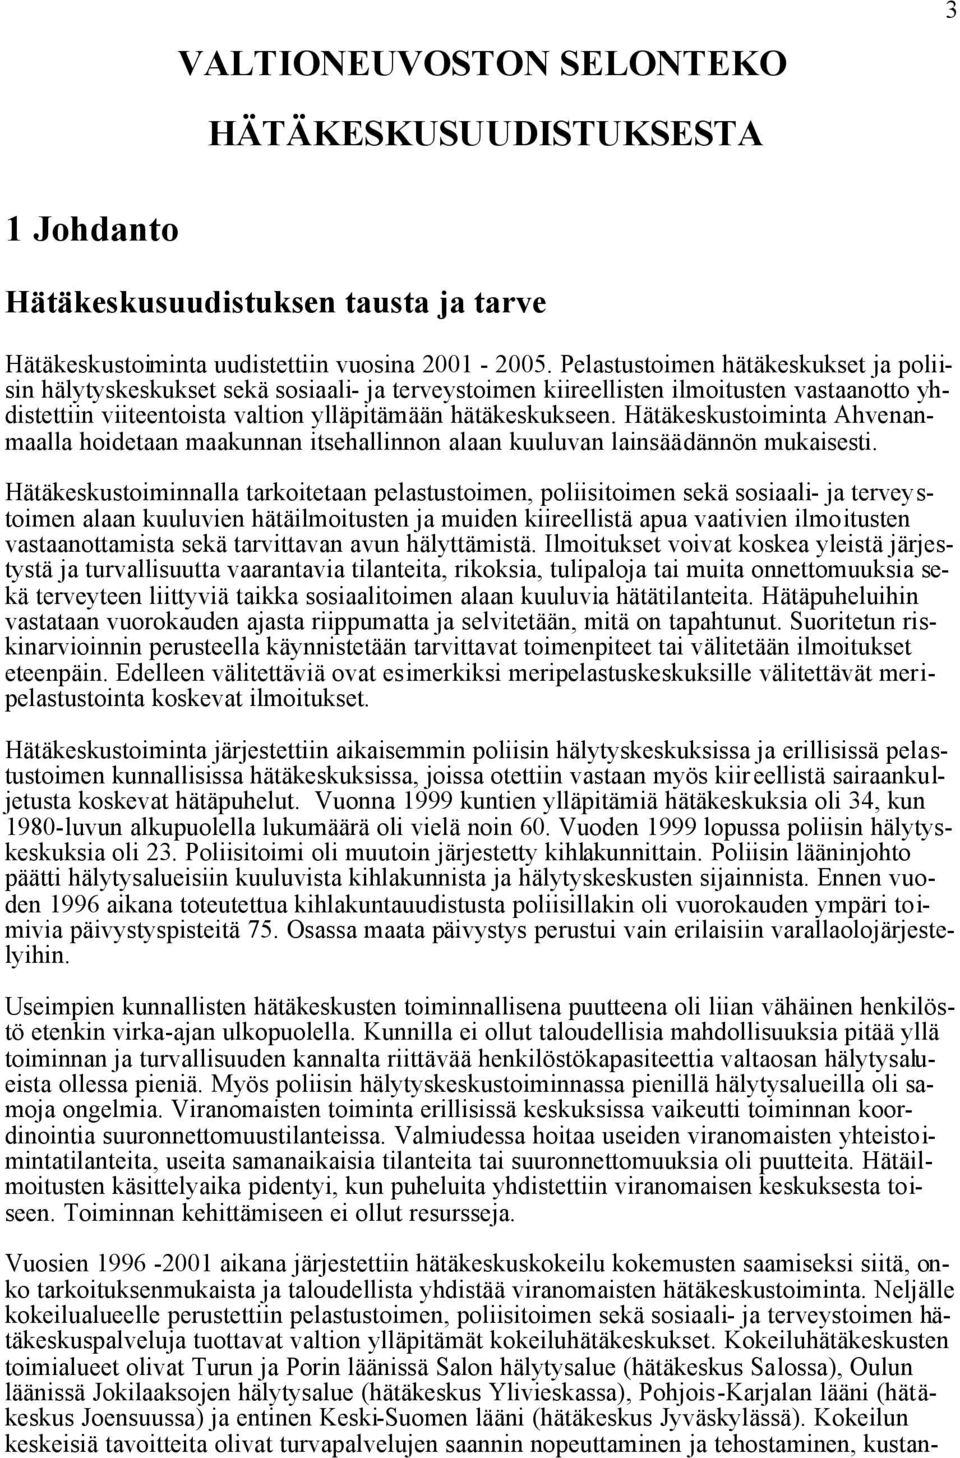 Hätäkeskustoiminta Ahvenanmaalla hoidetaan maakunnan itsehallinnon alaan kuuluvan lainsäädännön mukaisesti.